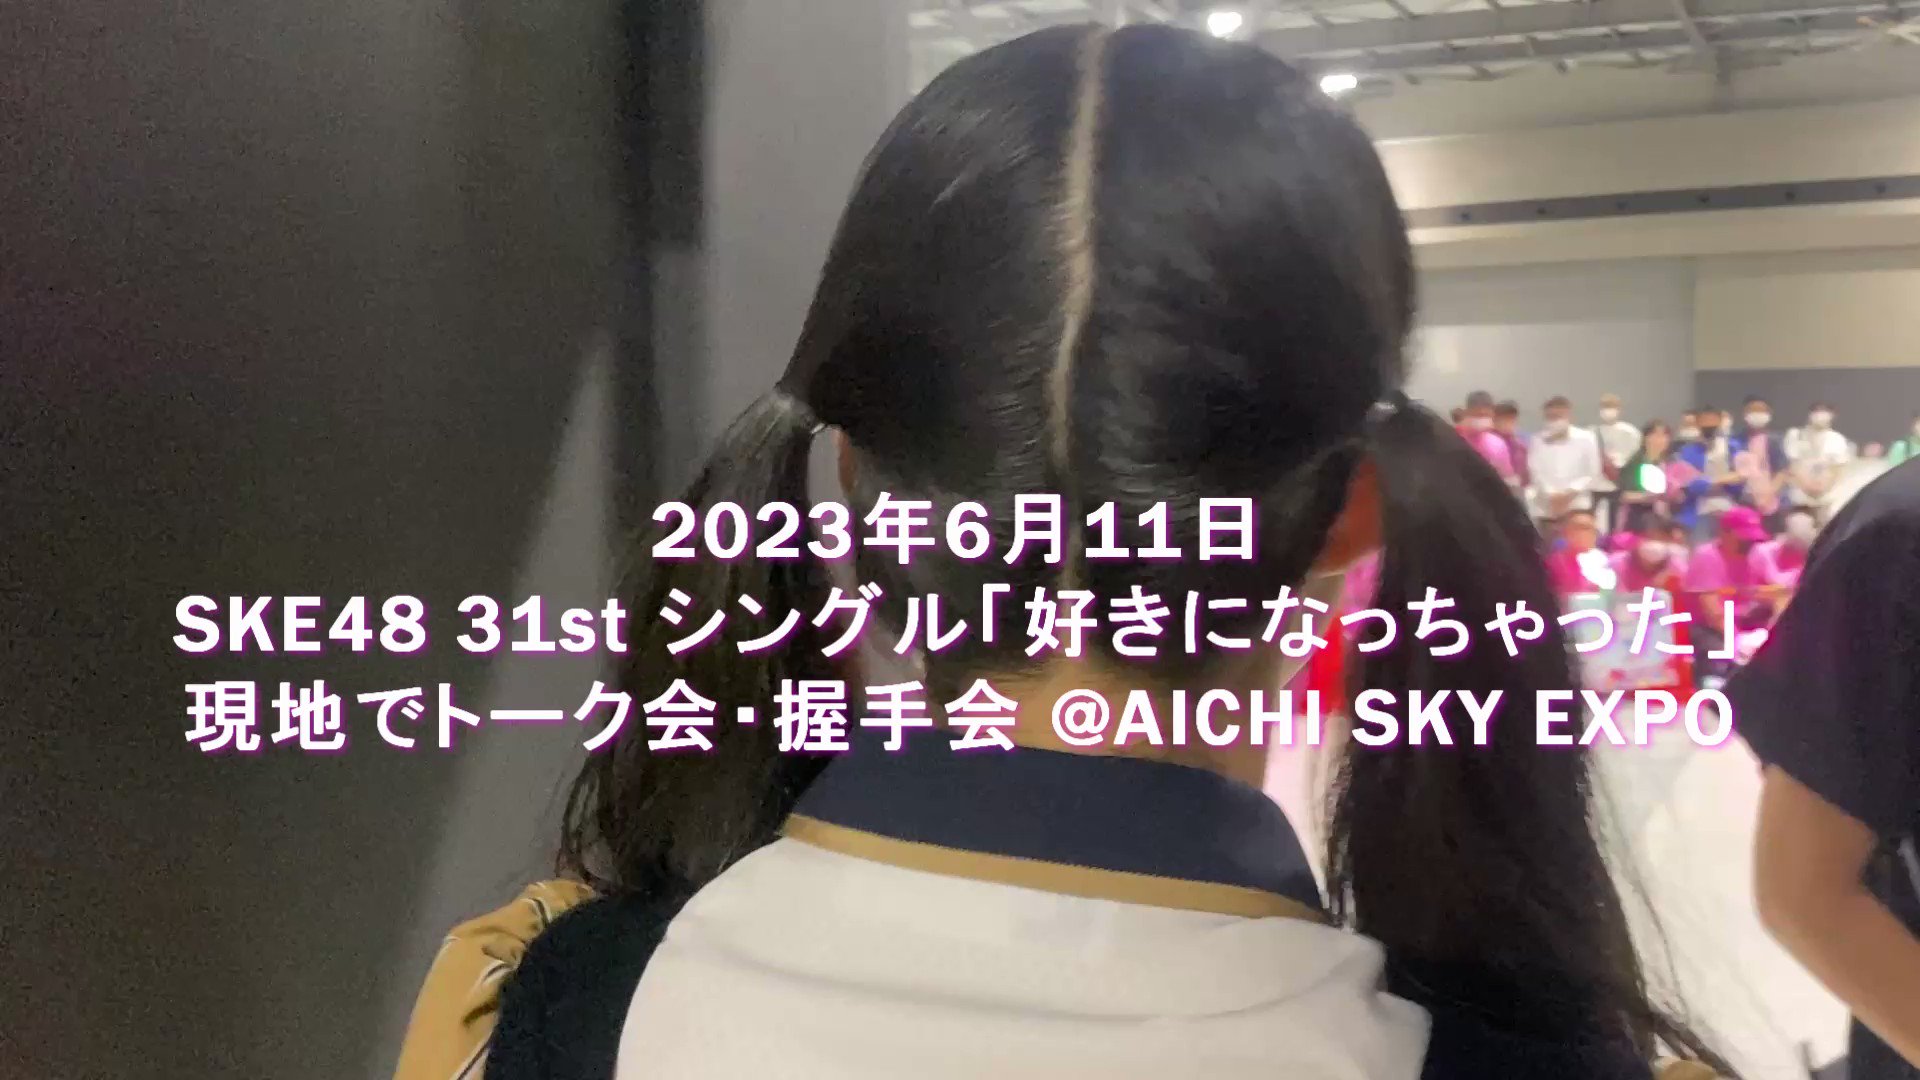 [REPO] 2023版日本握手教學@Aichi Sky Expo